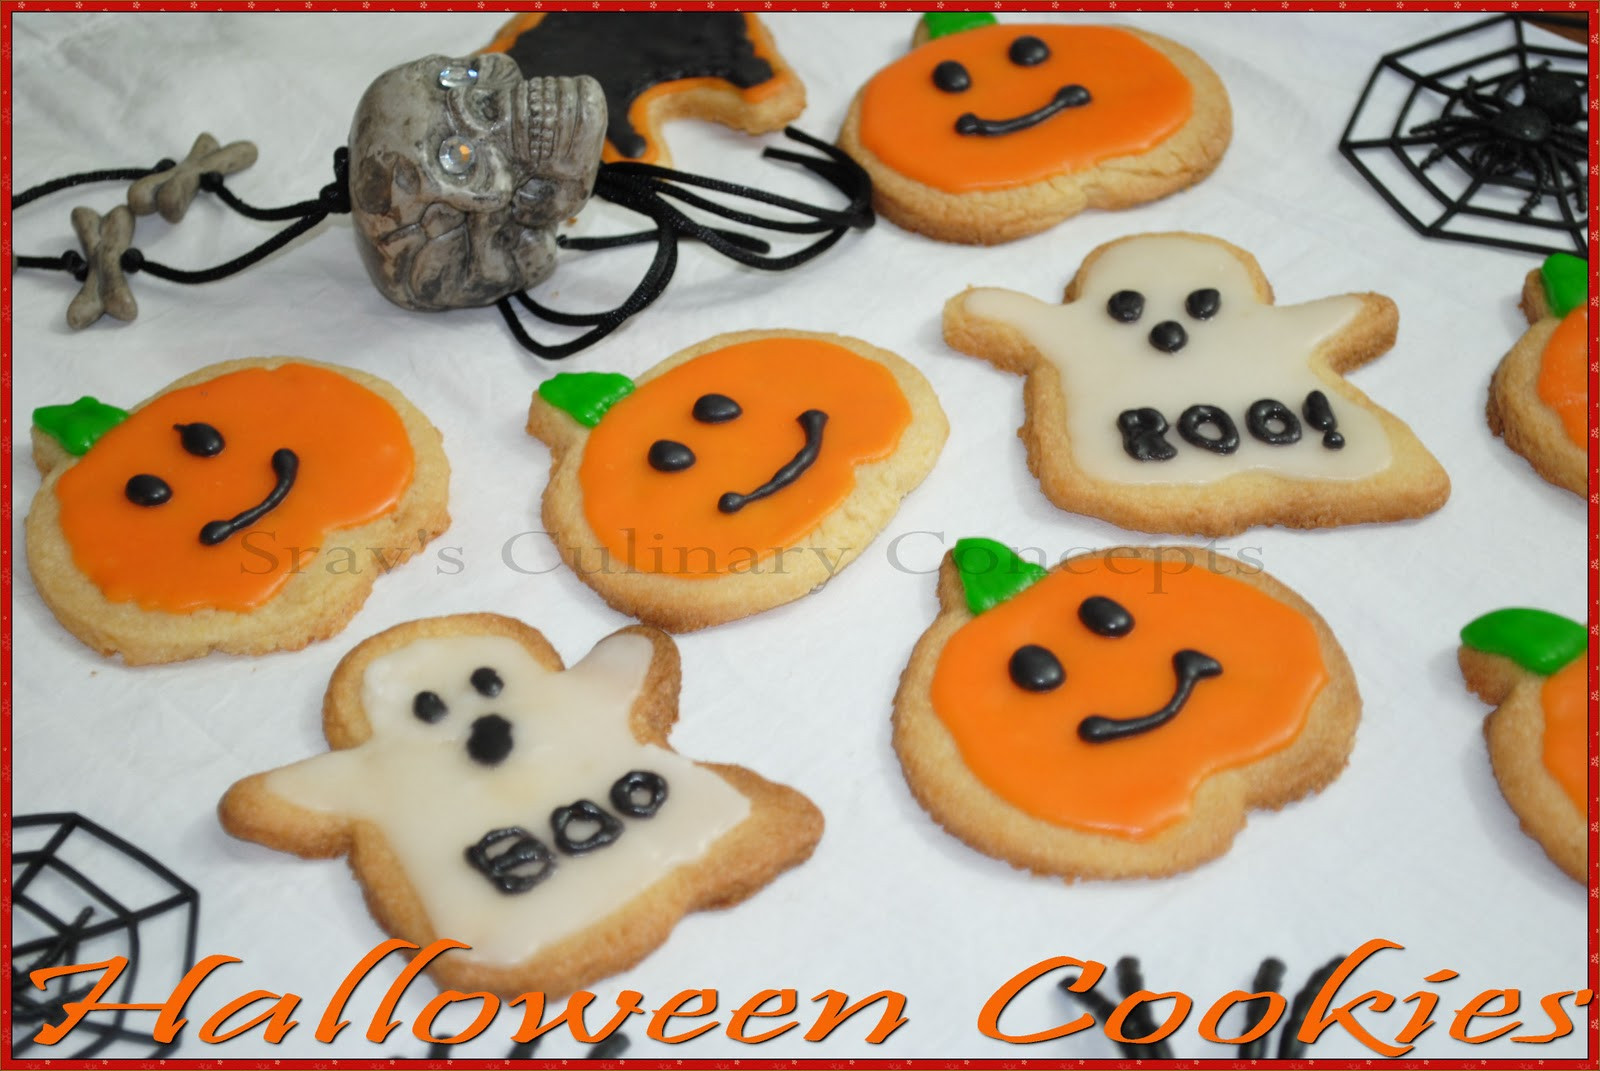 Sugar Cookies Halloween
 Srav s Culinary Concepts Halloween Sugar Cookies with